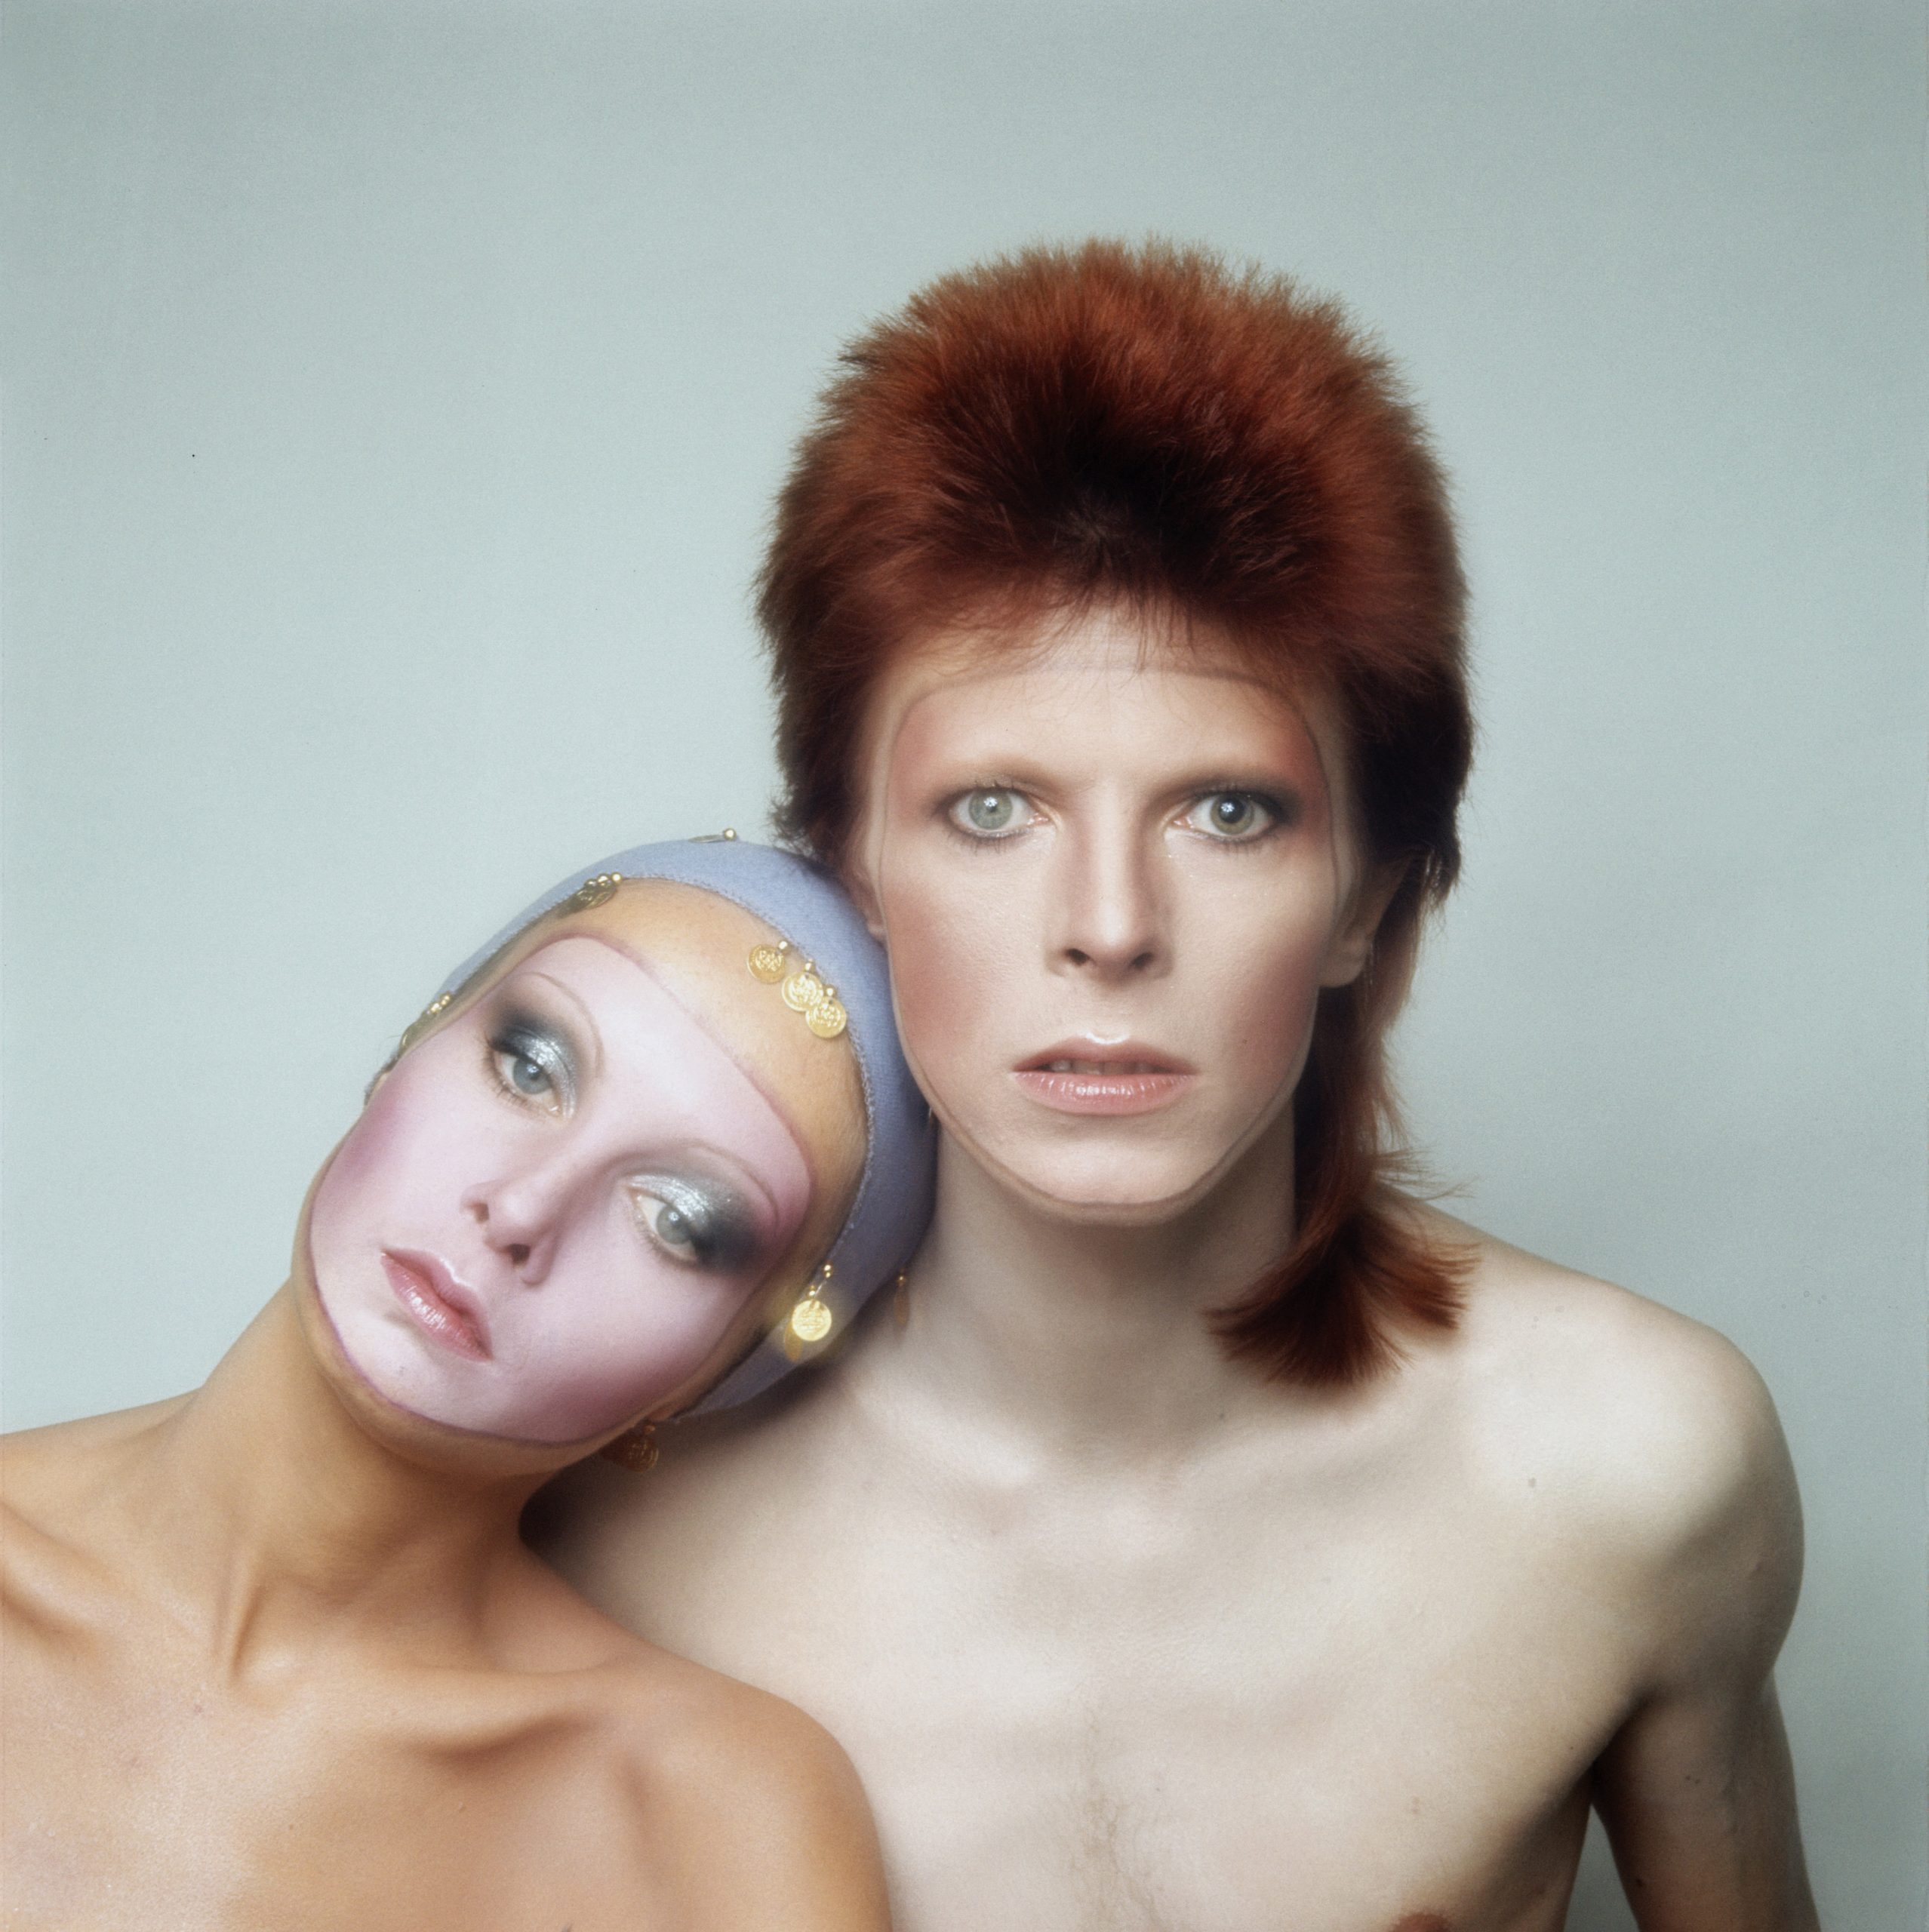 La pregunta del millón: ¿Por qué David Bowie tenía los ojos de colores distintos?